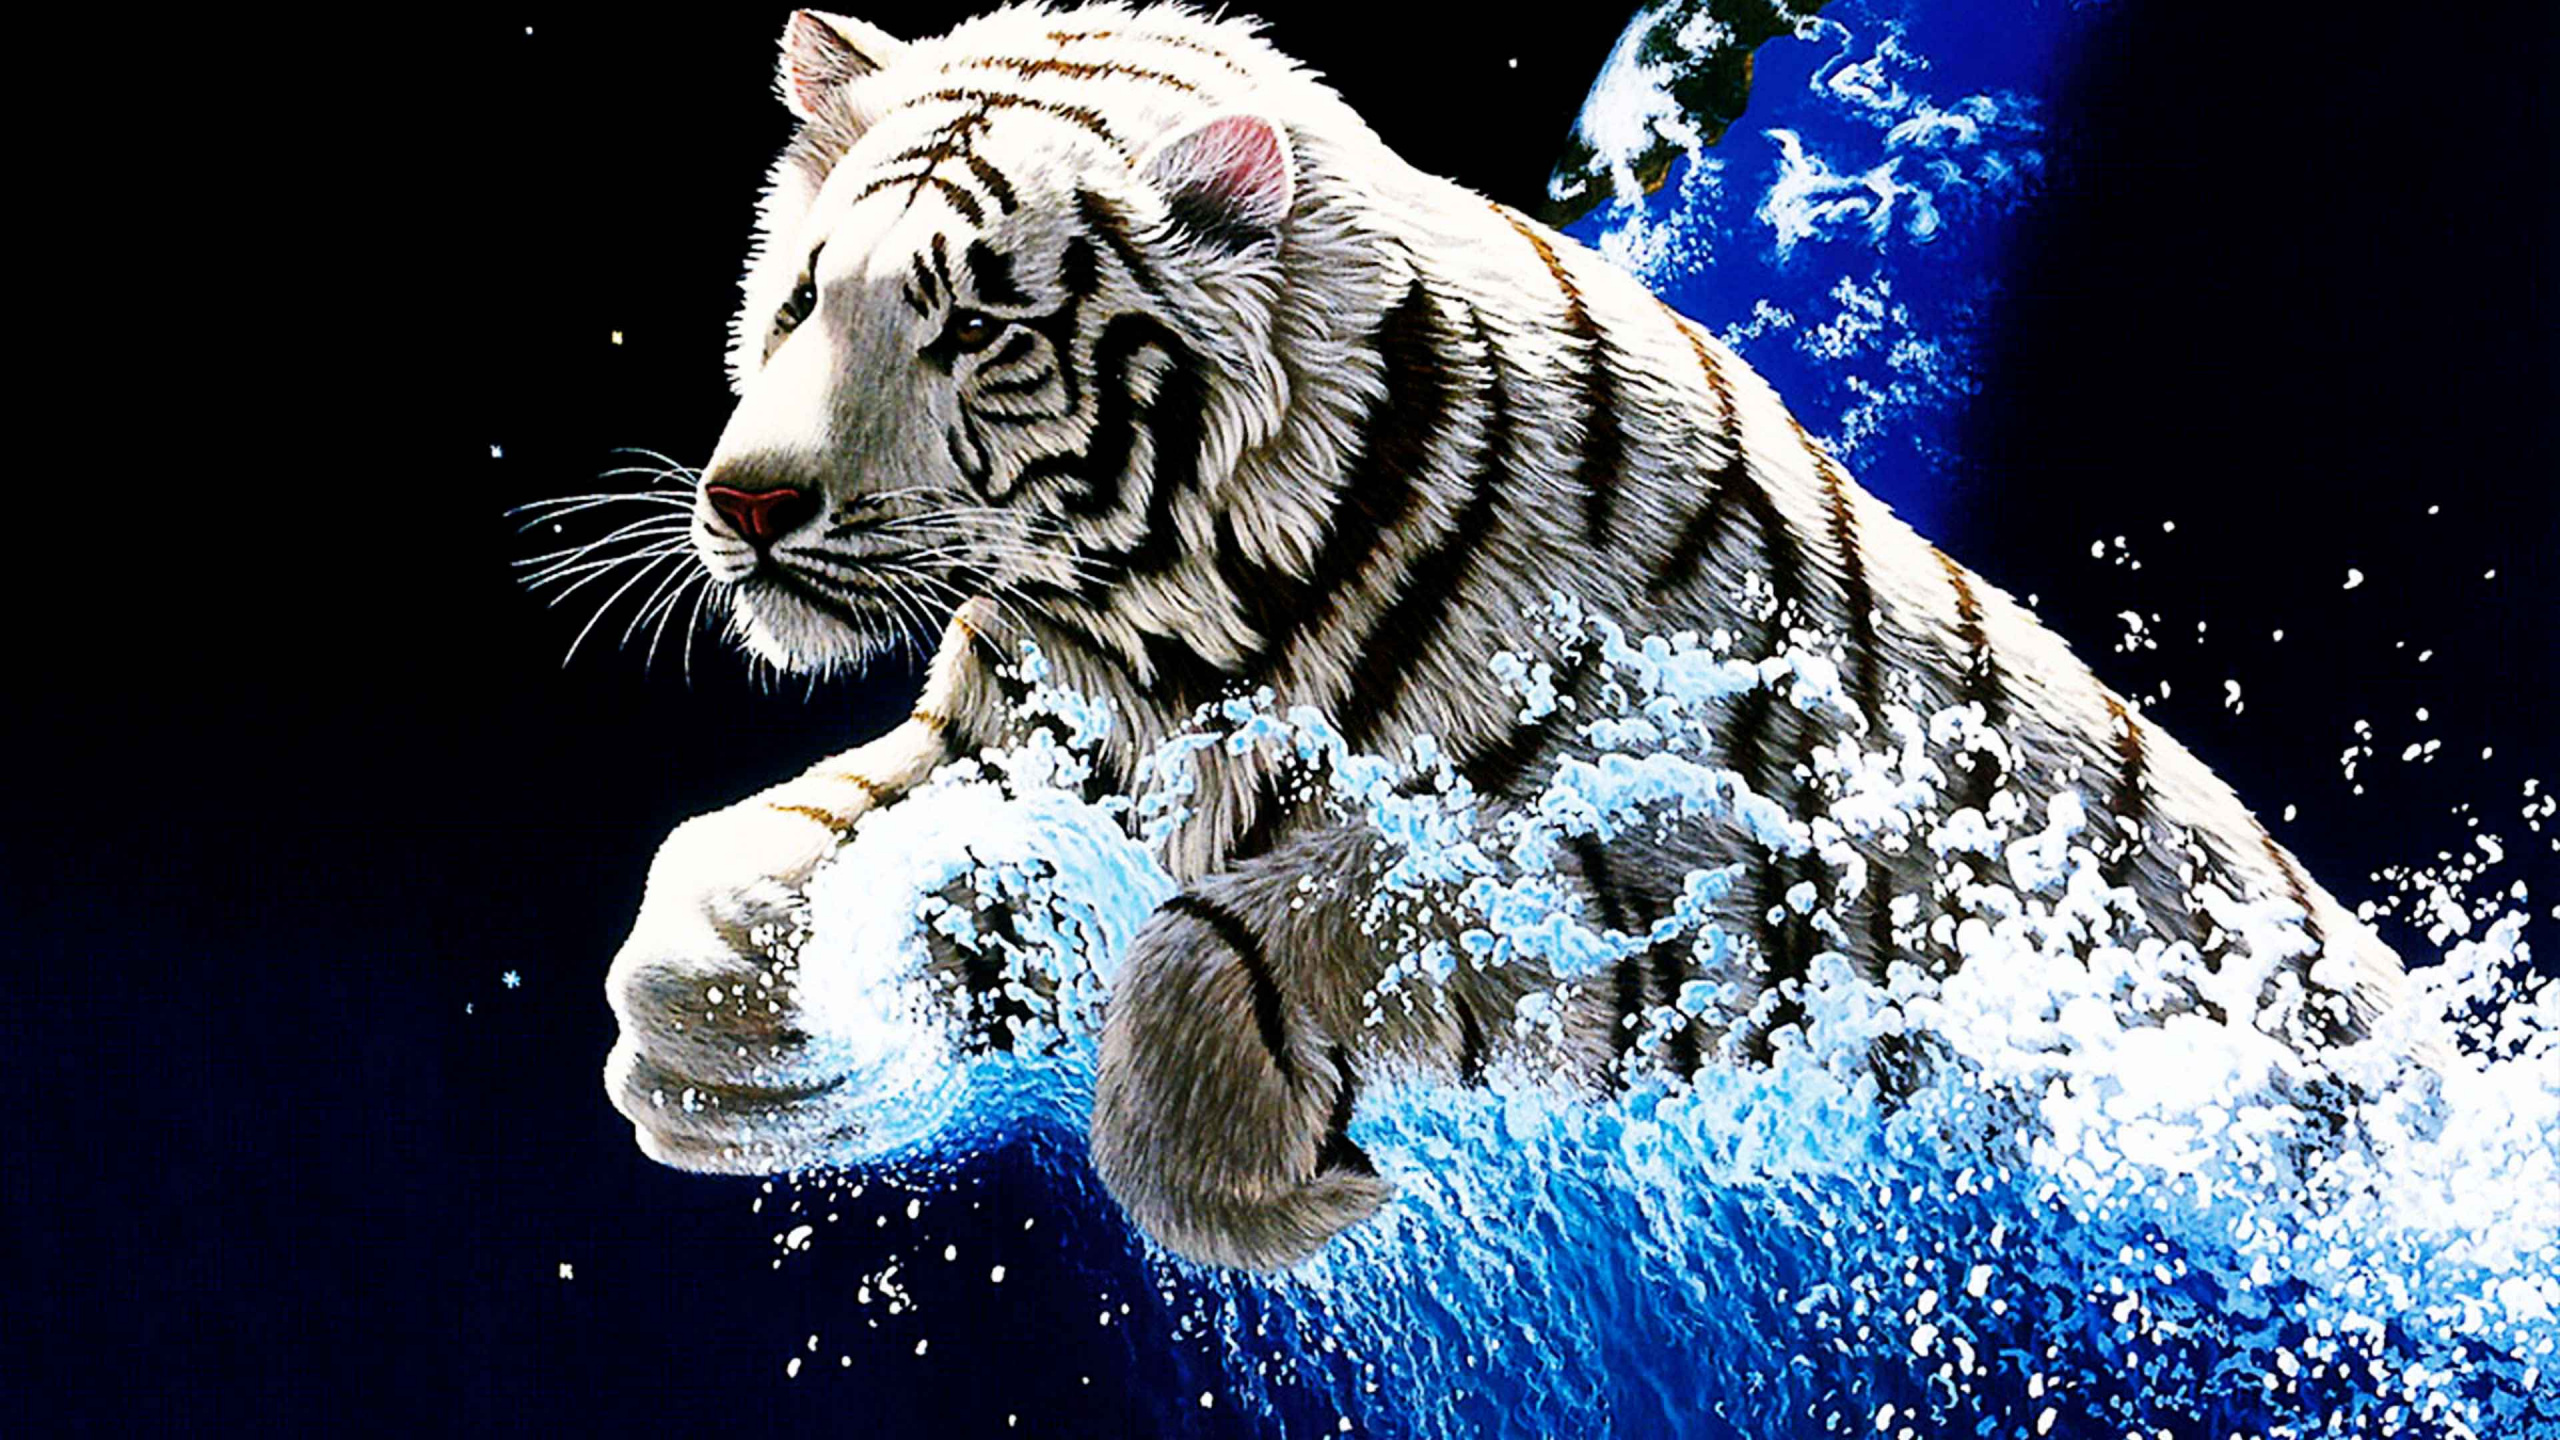 白虎, 老虎, 孟加拉虎, 猫科, 西伯利亚虎 壁纸 2560x1440 允许